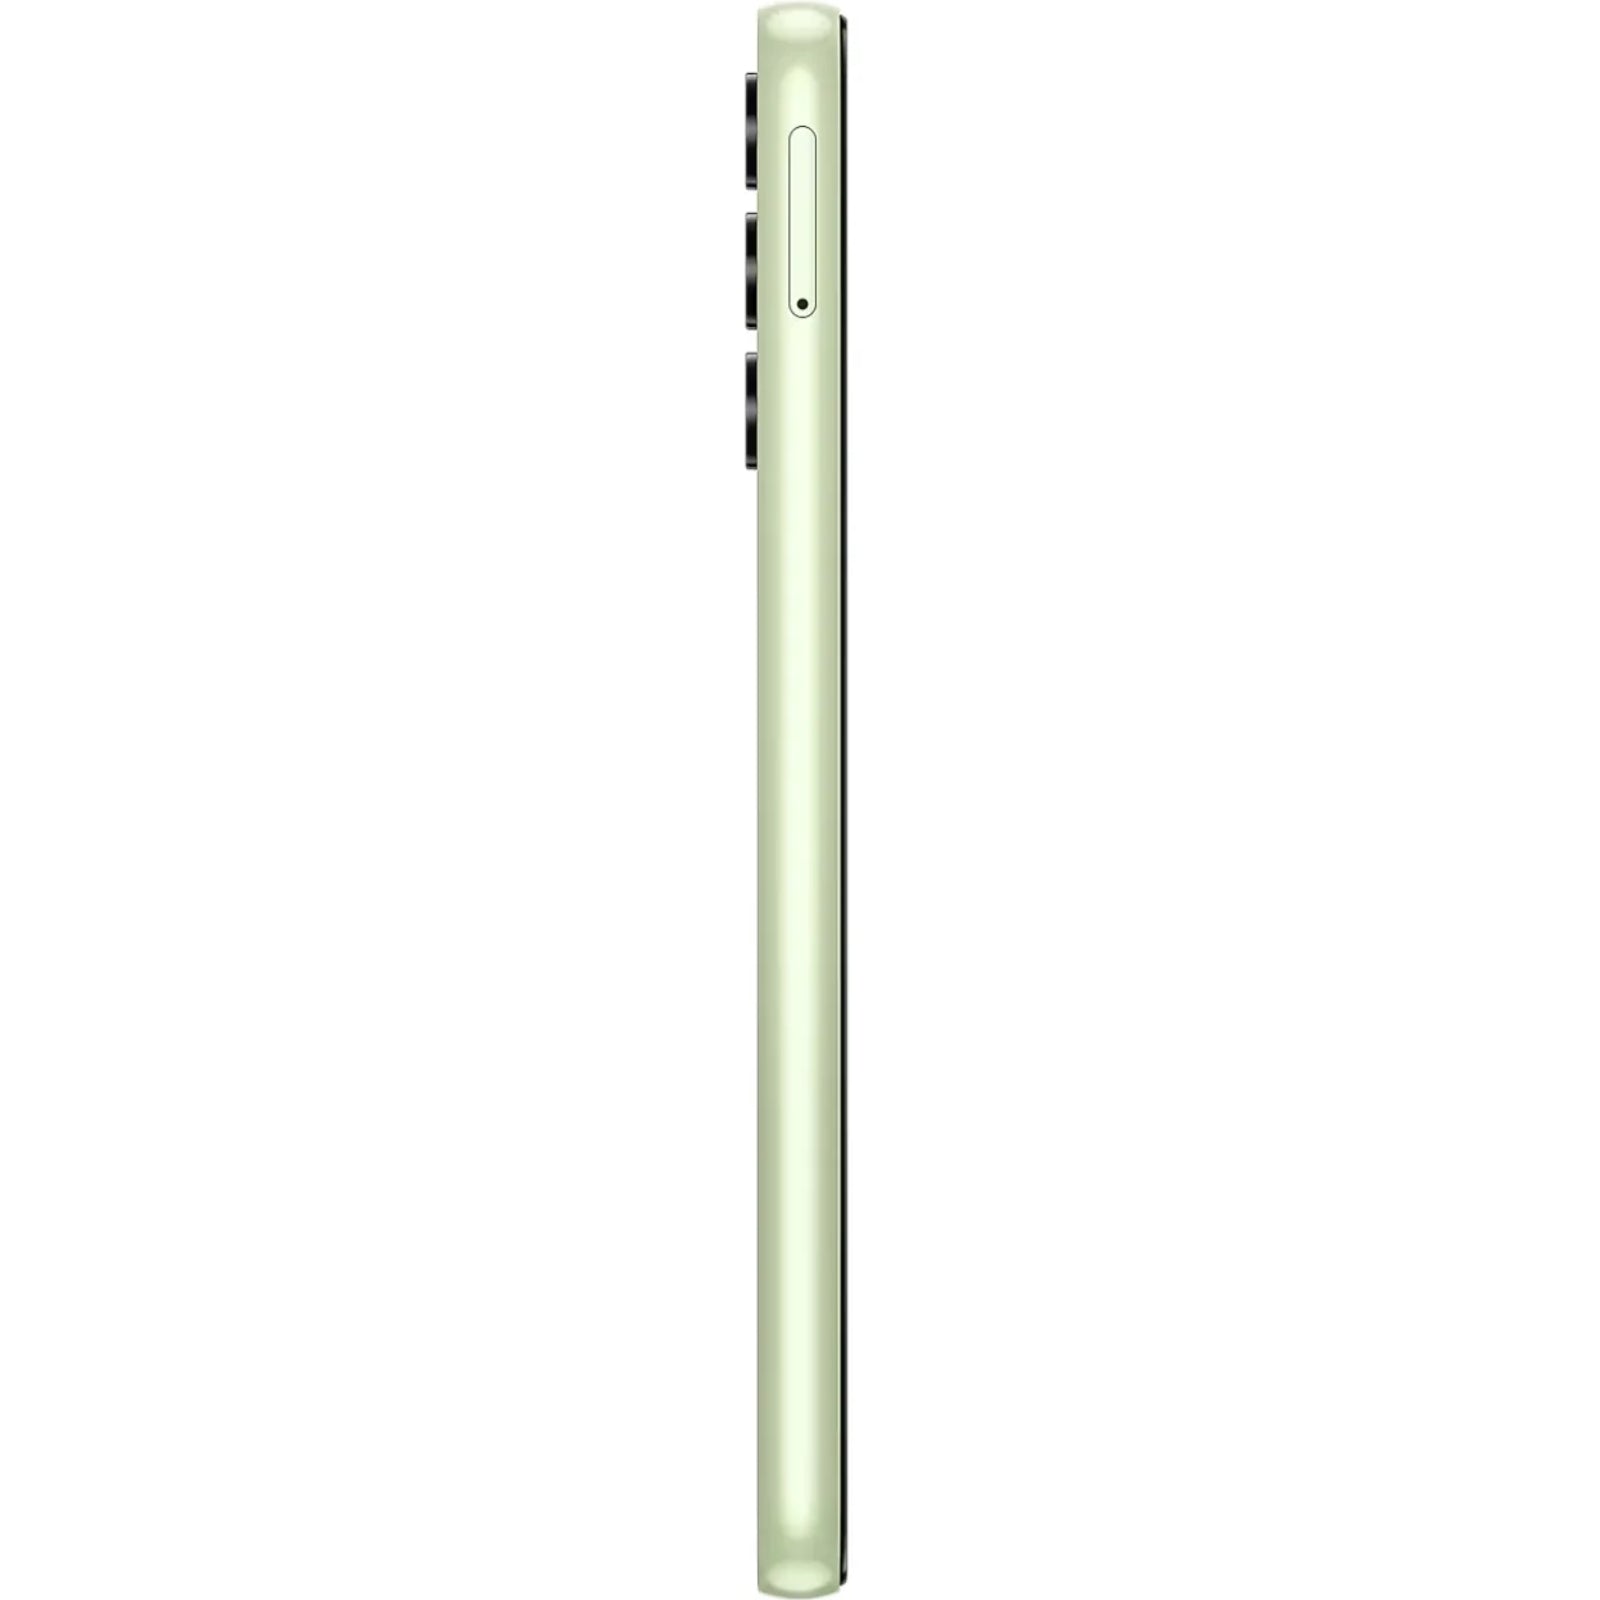 Samsung Galaxy A14 Dual Sim A145FD 4G (4GB)